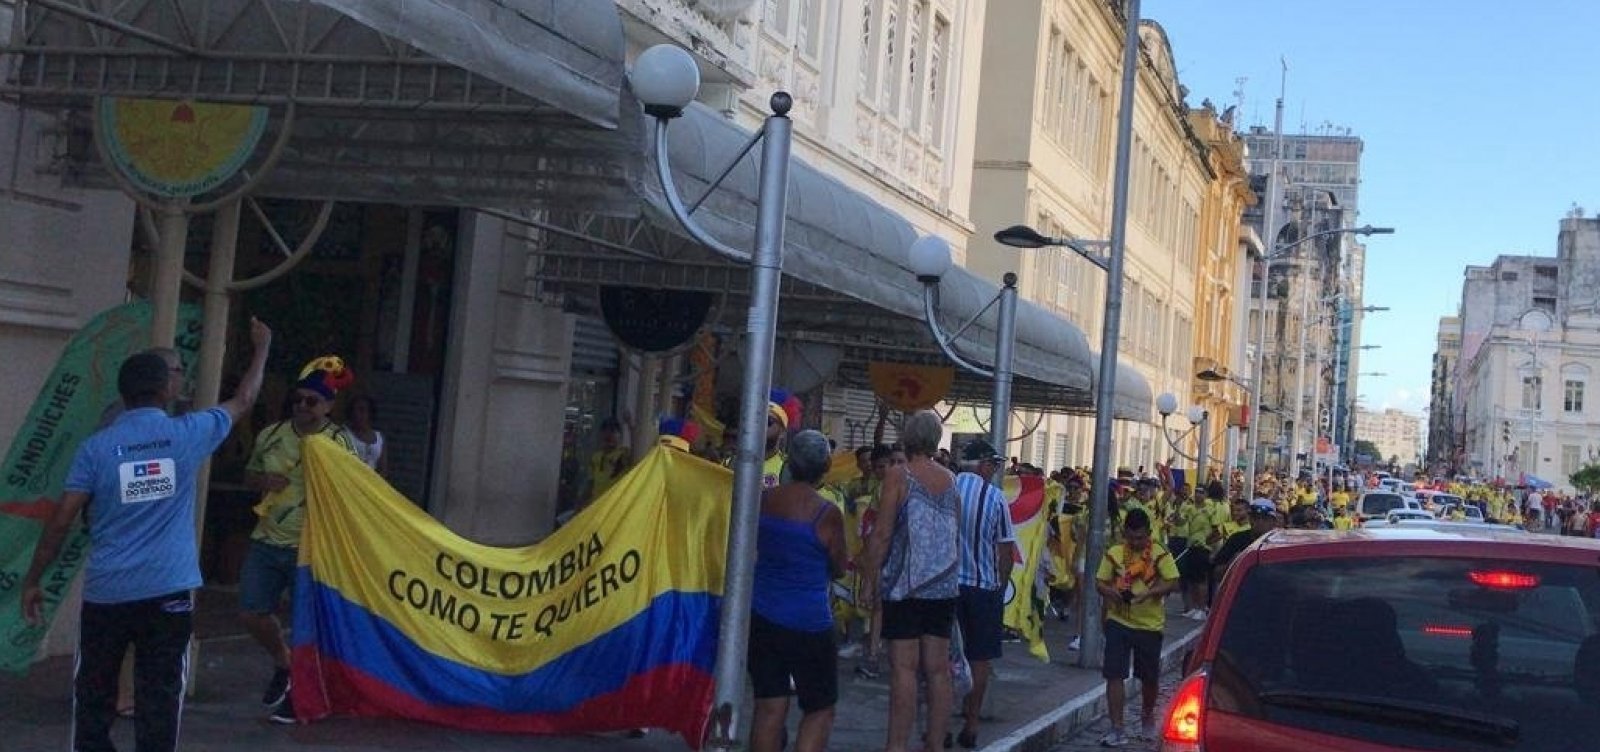 Colombianos envolvidos em briga na Fonte Nova devem deixar o país em 60 dias, diz PF